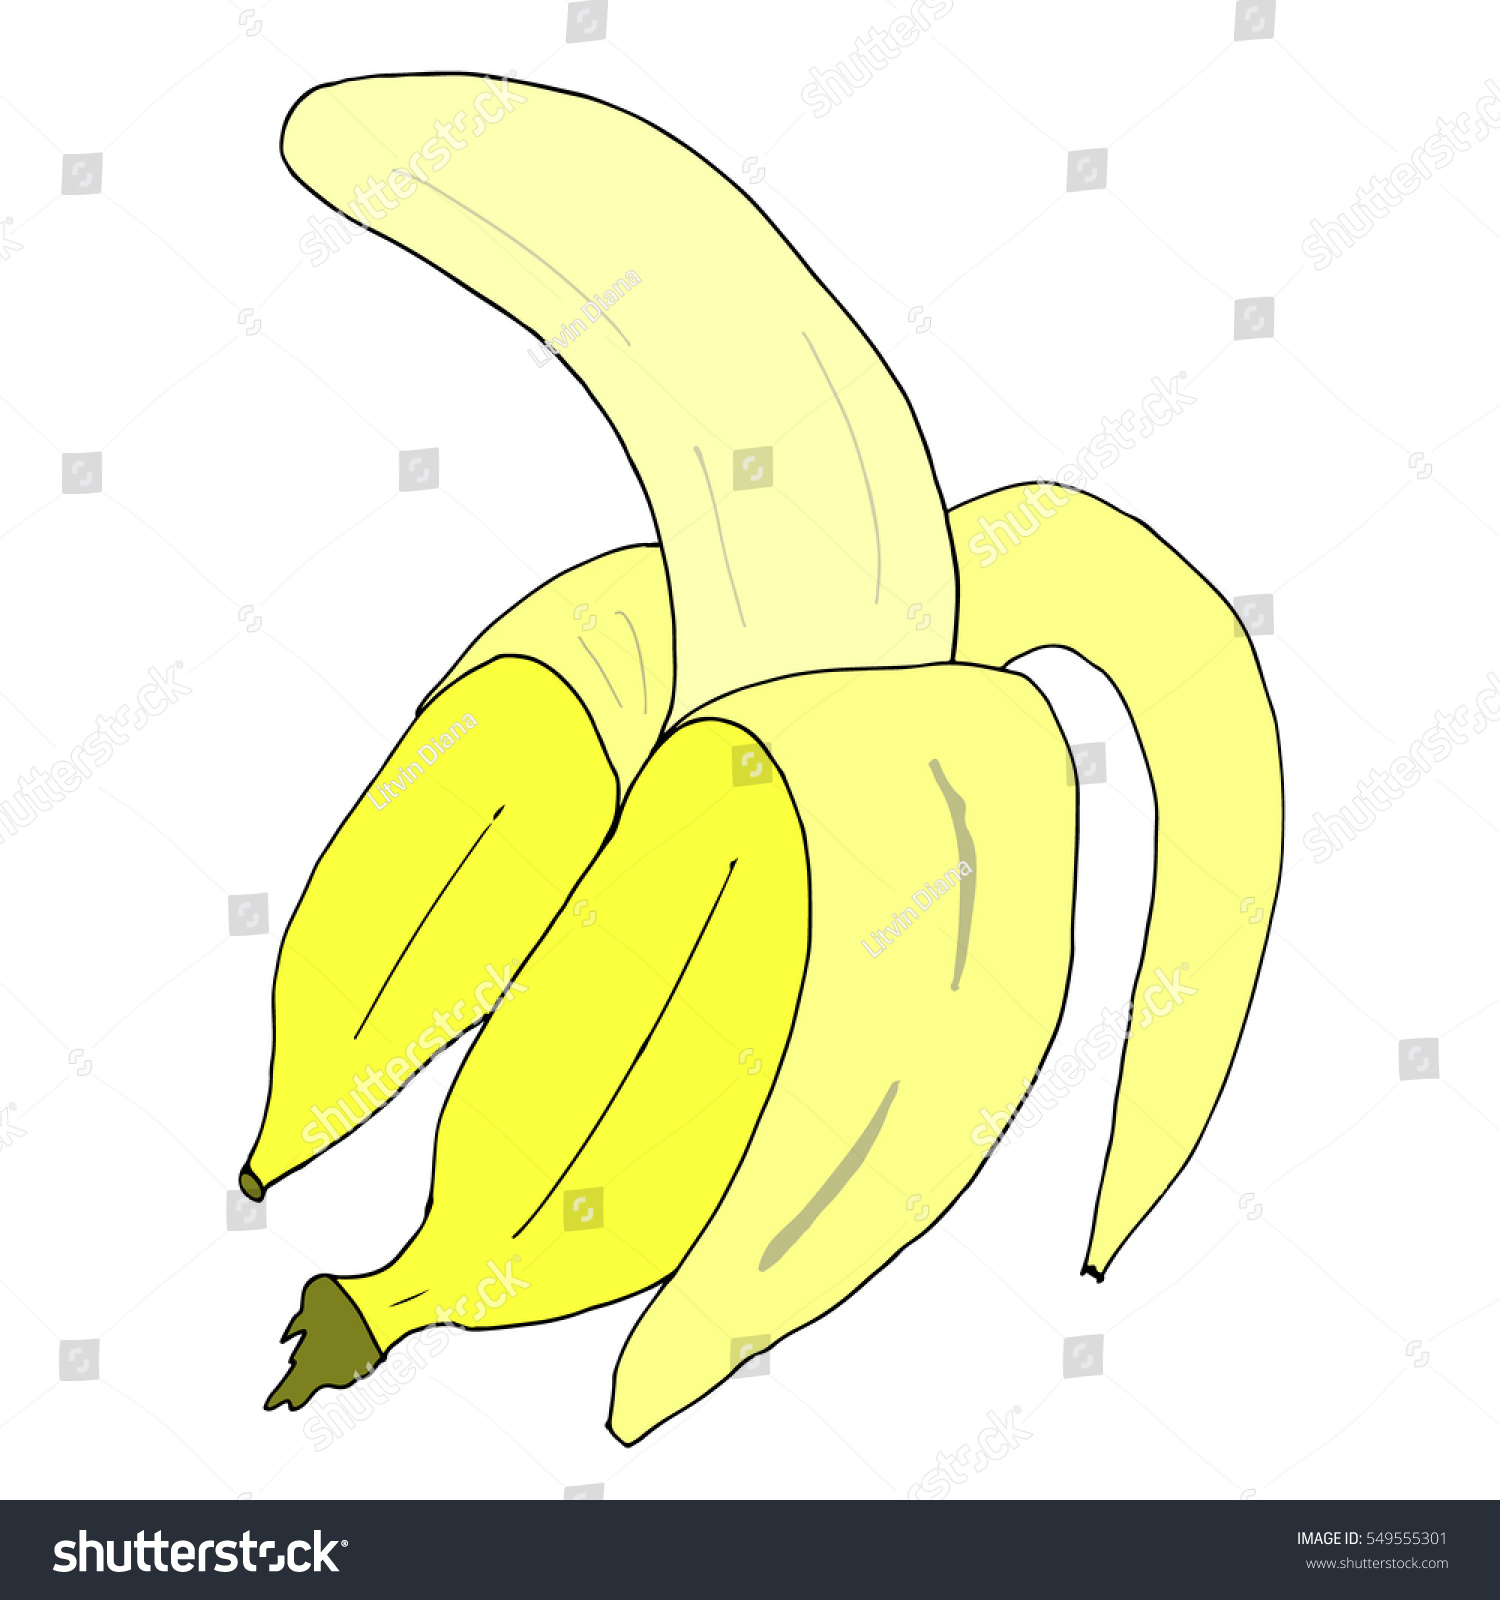 Banana. Vector Banana. - 549555301 : Shutterstock